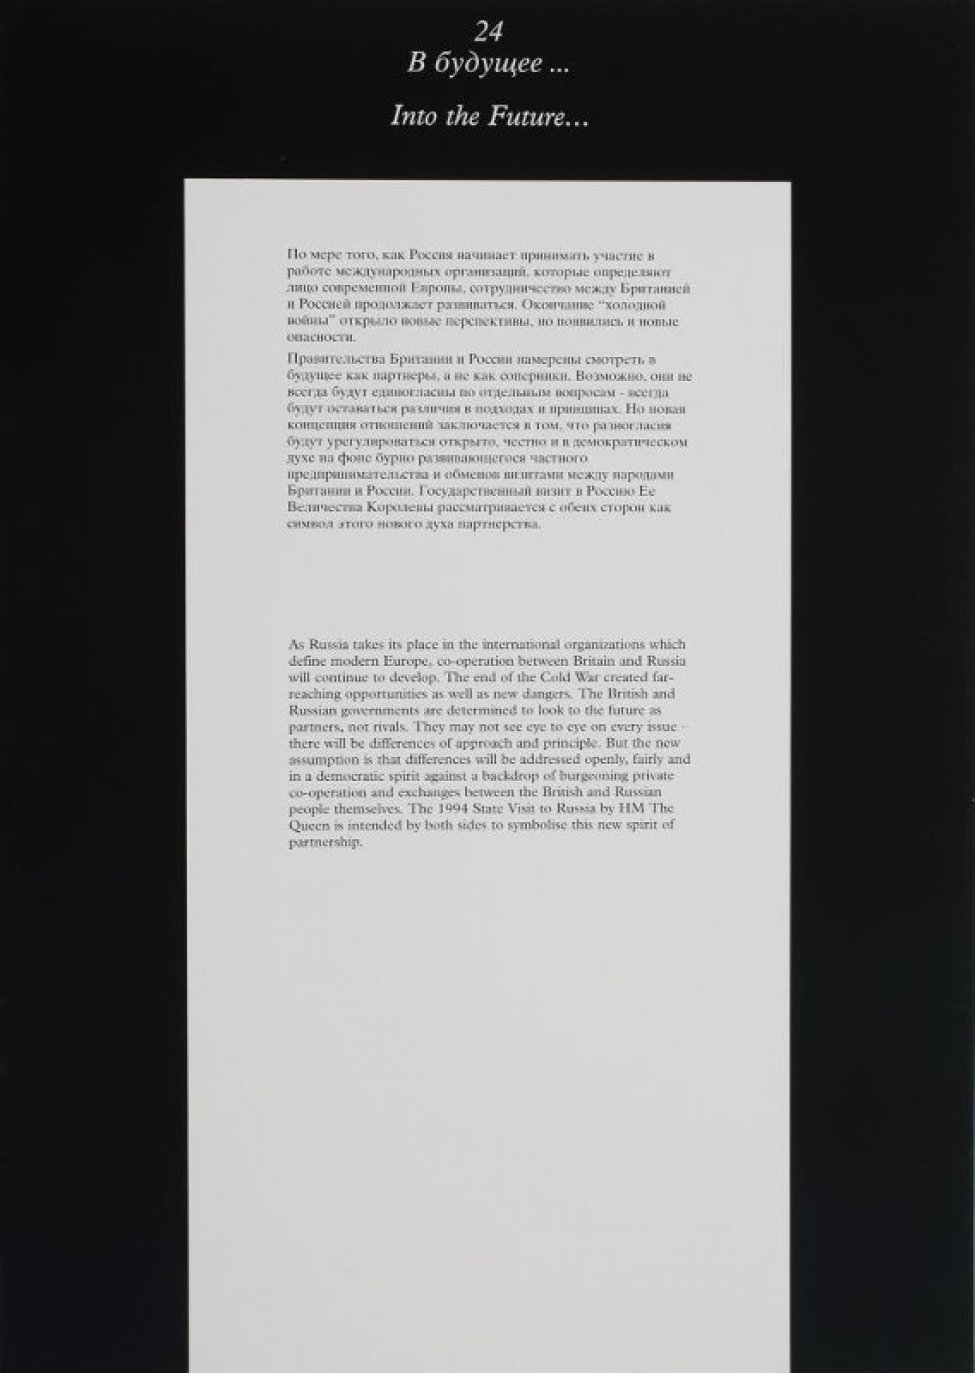 В центре композиции на белом фоне два текста: вверху - текст на русском языке, внизу - на английском языке.